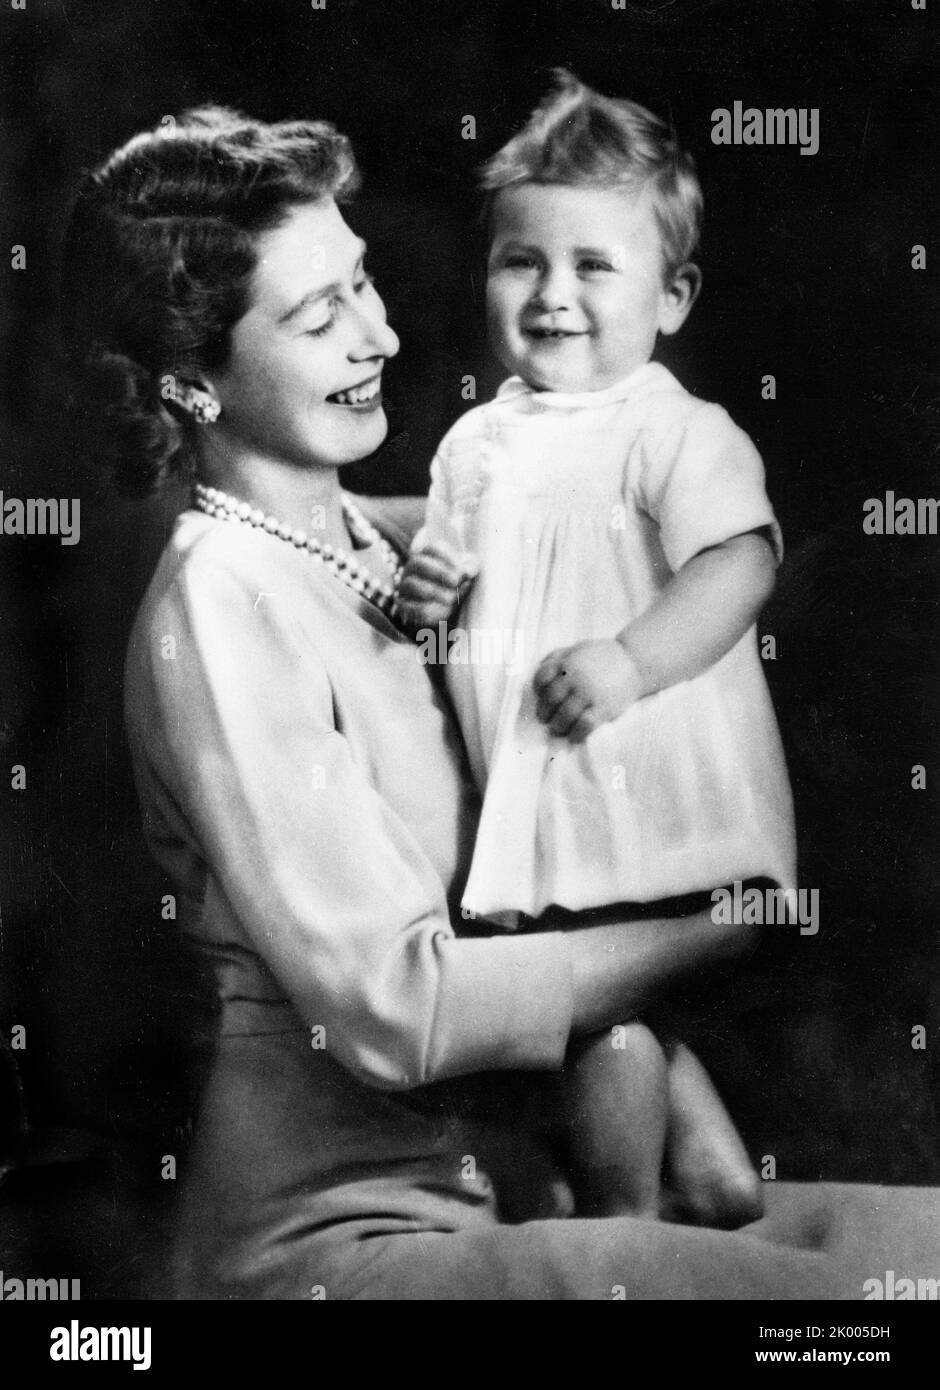 12 novembre 1949 - Londres, Angleterre, Royaume-Uni - LA REINE ELIZABETH II tient son fils aîné, LE PRINCE CHARLES, à son premier anniversaire. (Credit image: € © Keystone Press Agency/ZUMA Press Wire) Banque D'Images